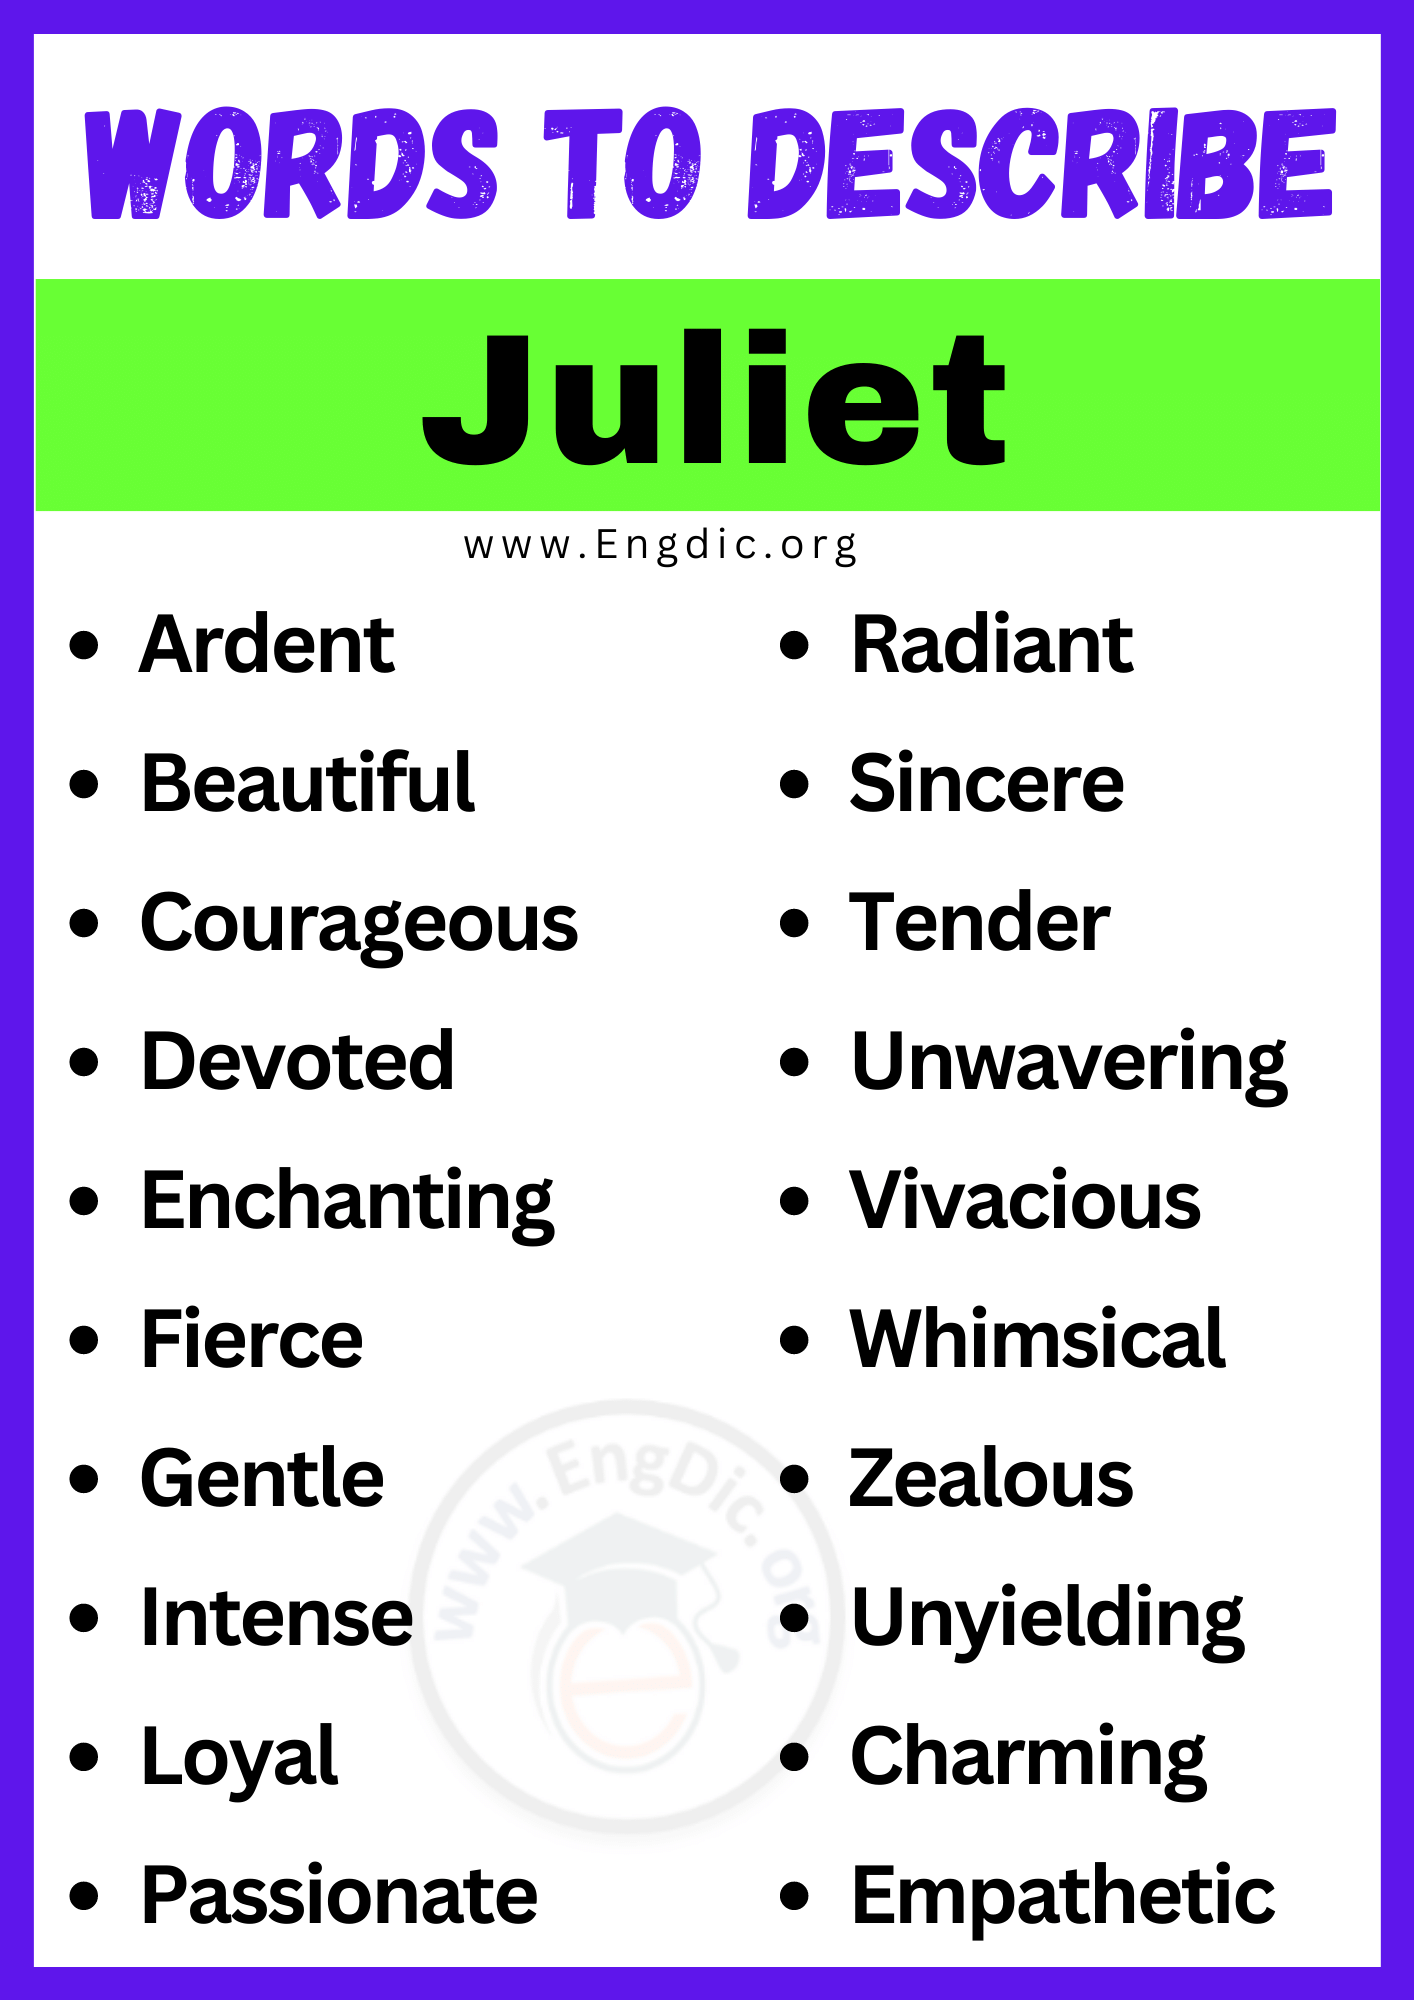 Words to Describe Juliet